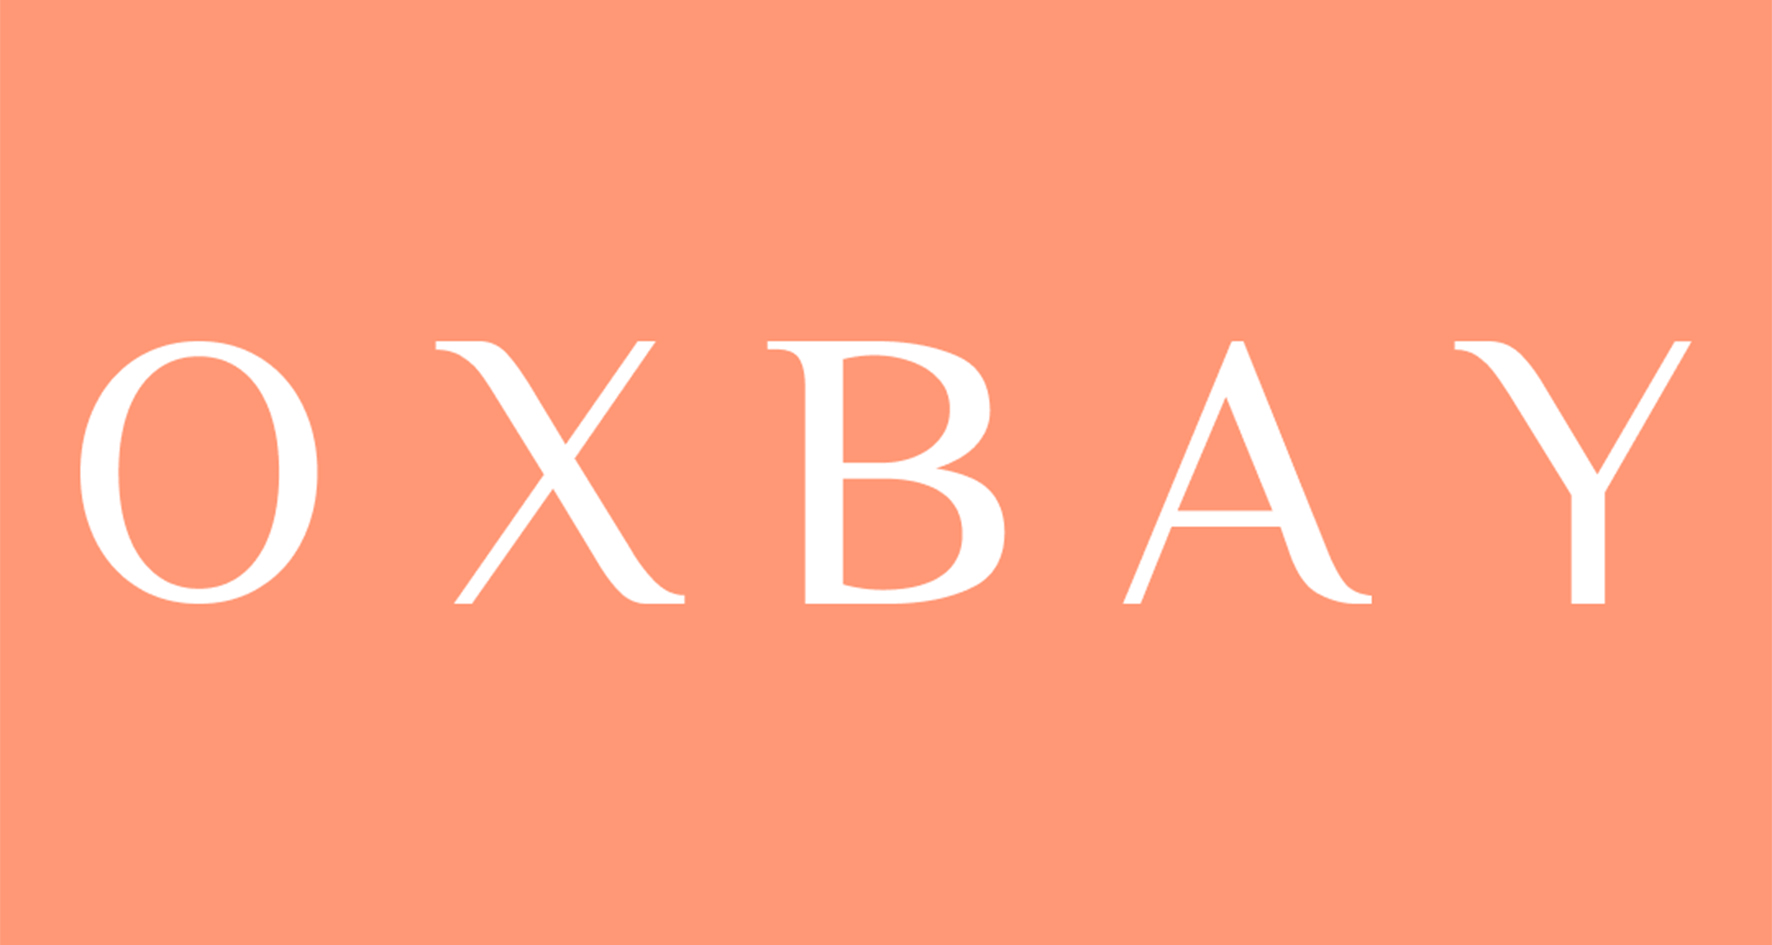 Oxbay Одежда и аксессуары, купить онлайн, Oxbay в универмаге Bolshoy